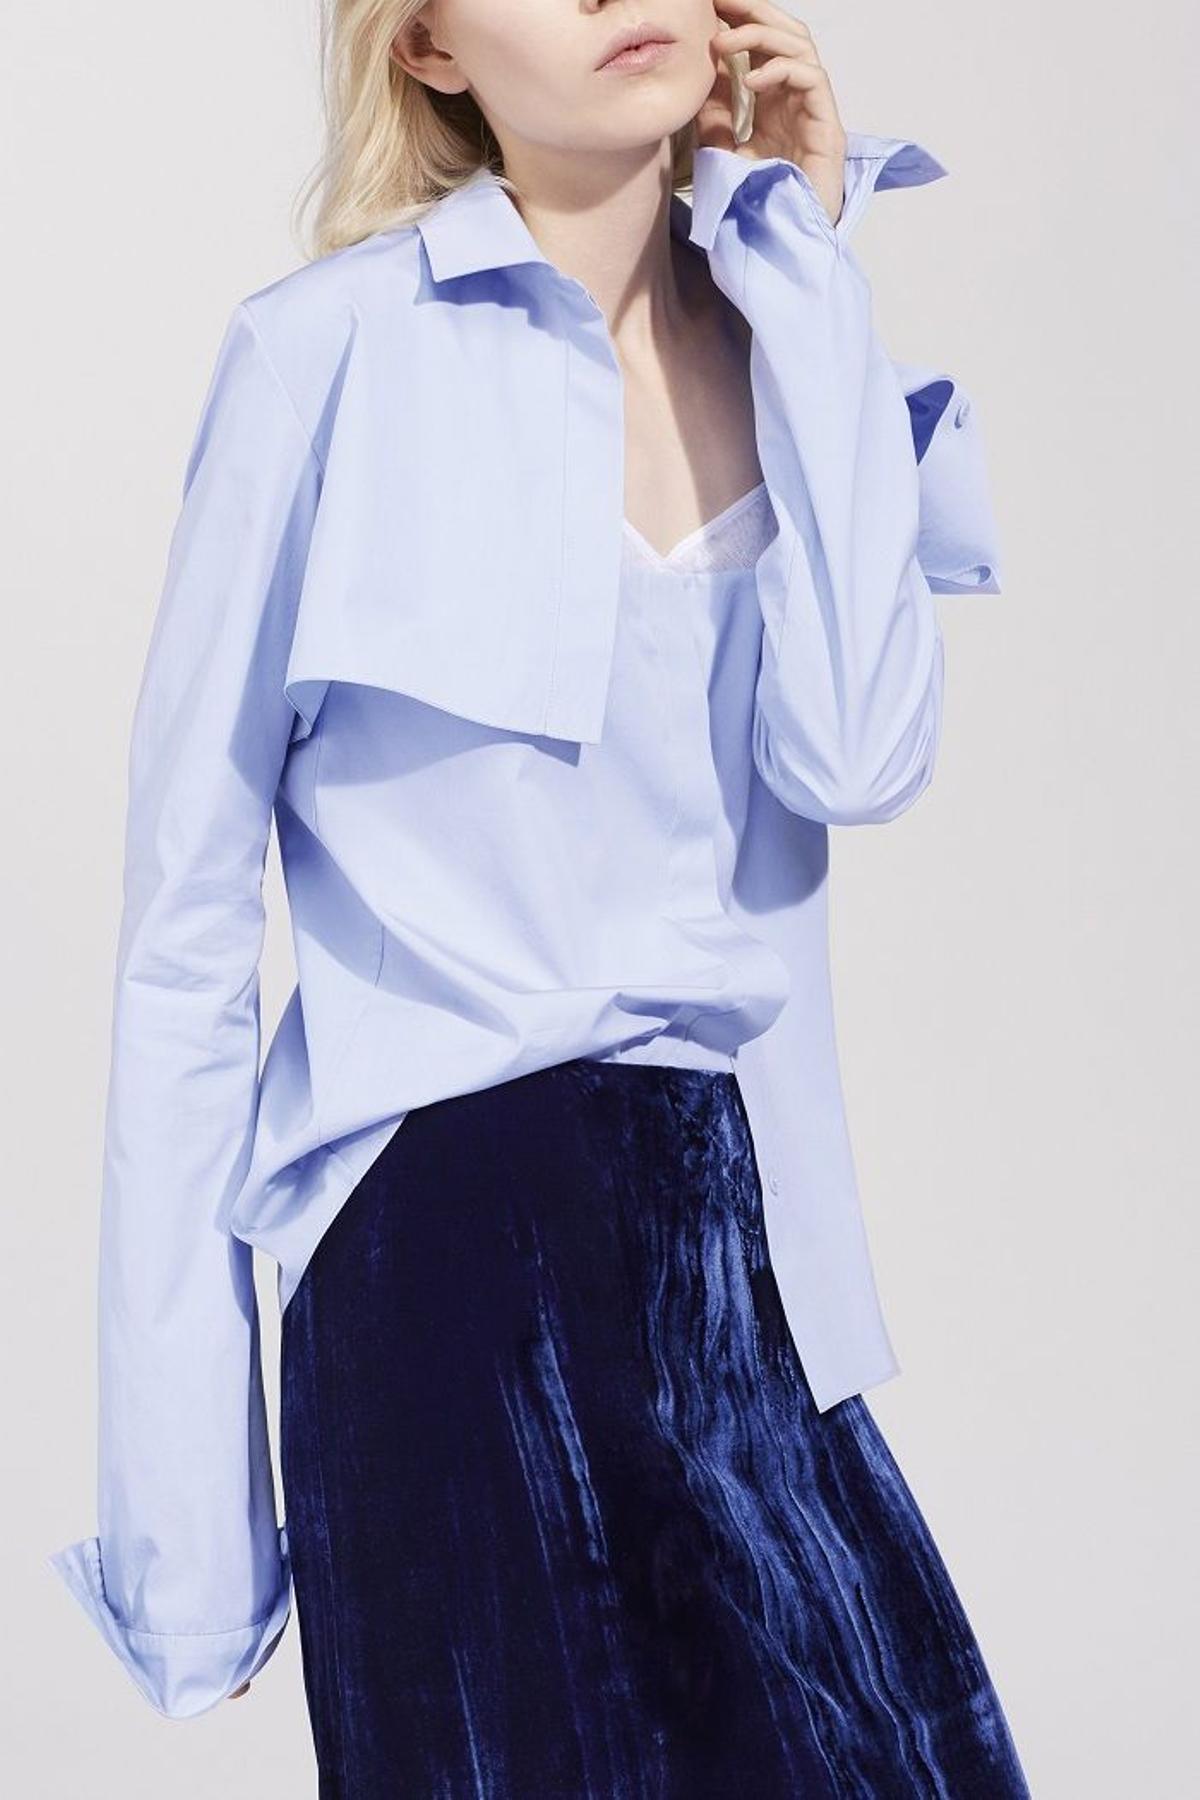 Nina Ricci colección primavera 2016, blusa masculina